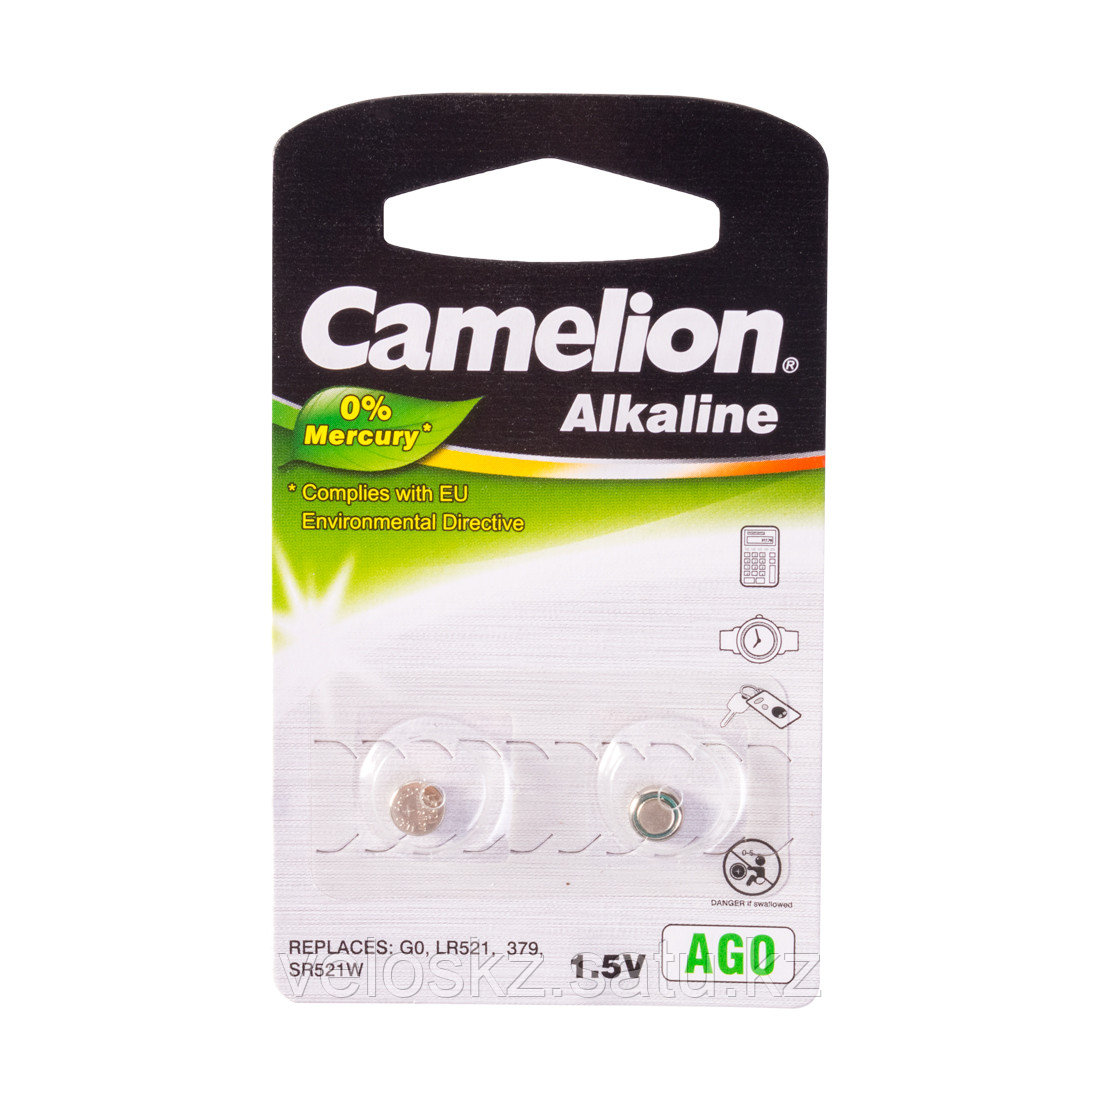 Camelion Батарейки, CAMELION, AG0-BP2, Alkaline, AG0, 1.5V, 0% Ртути, 2 шт.